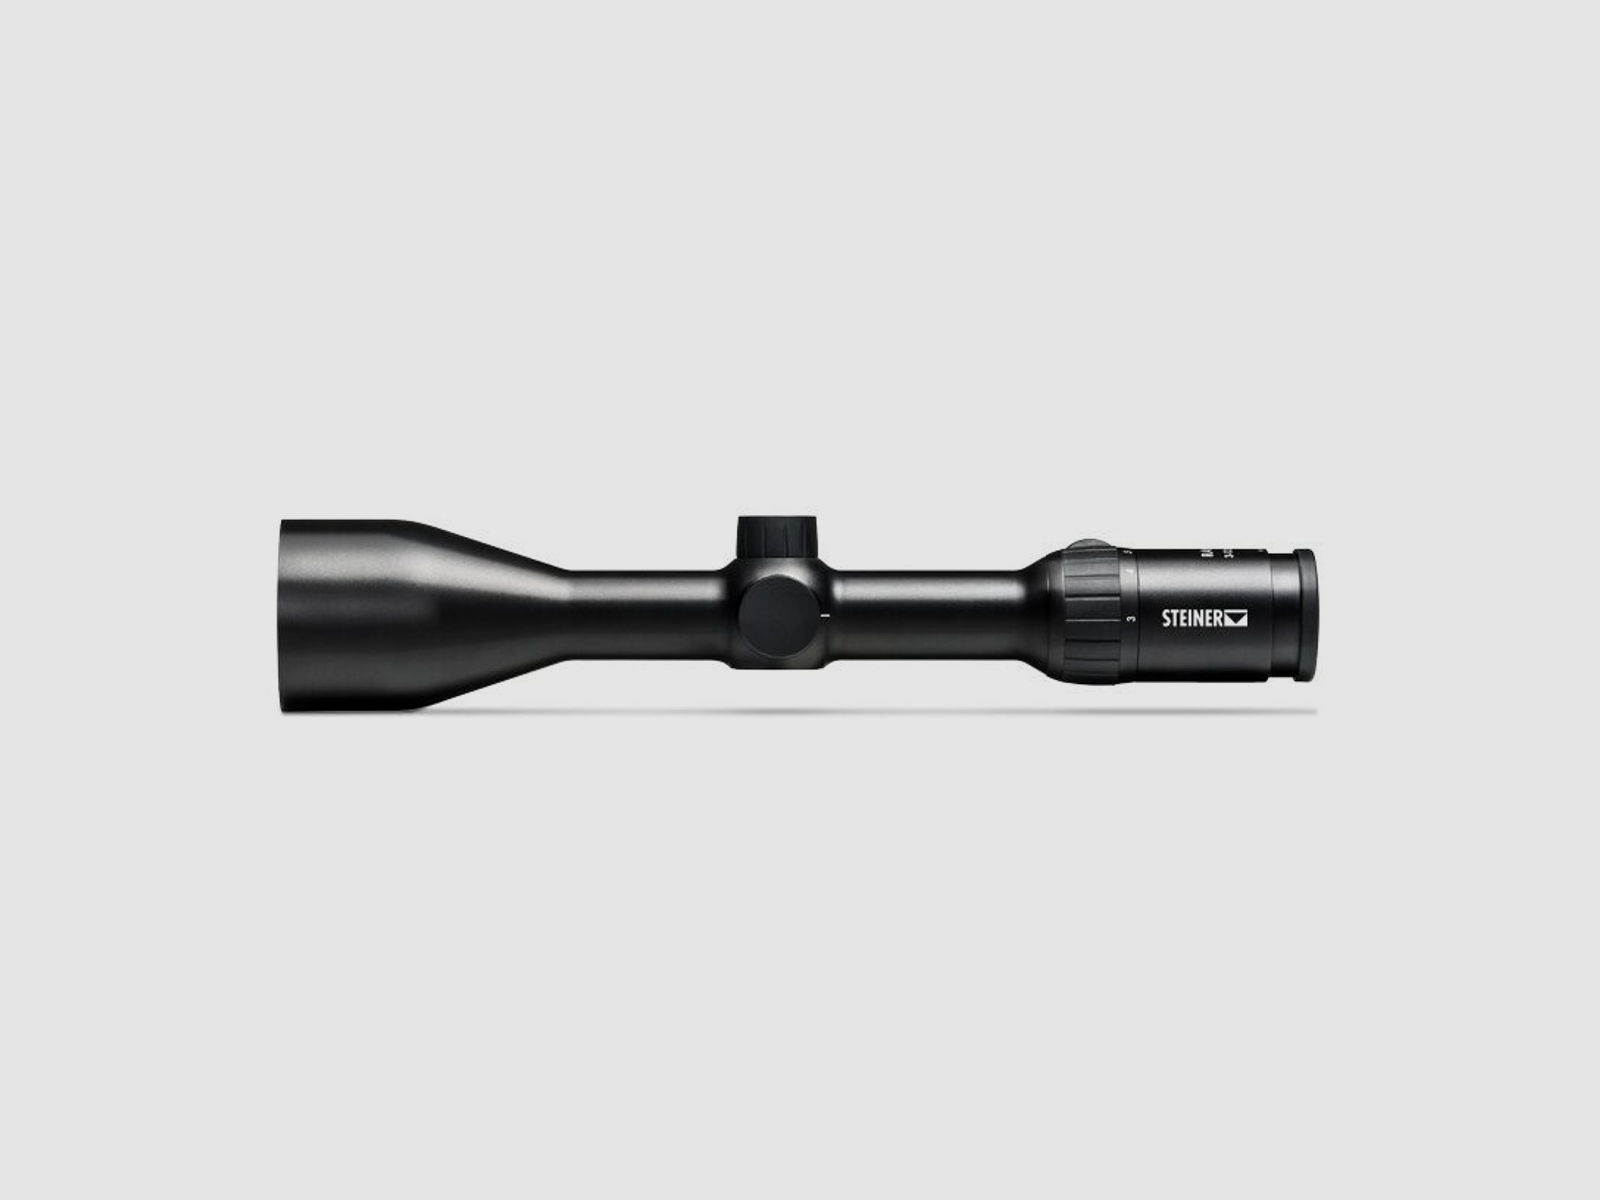 Browning	 Bar MK3 Composite Black, mit Steiner Ranger 4 3-12x56